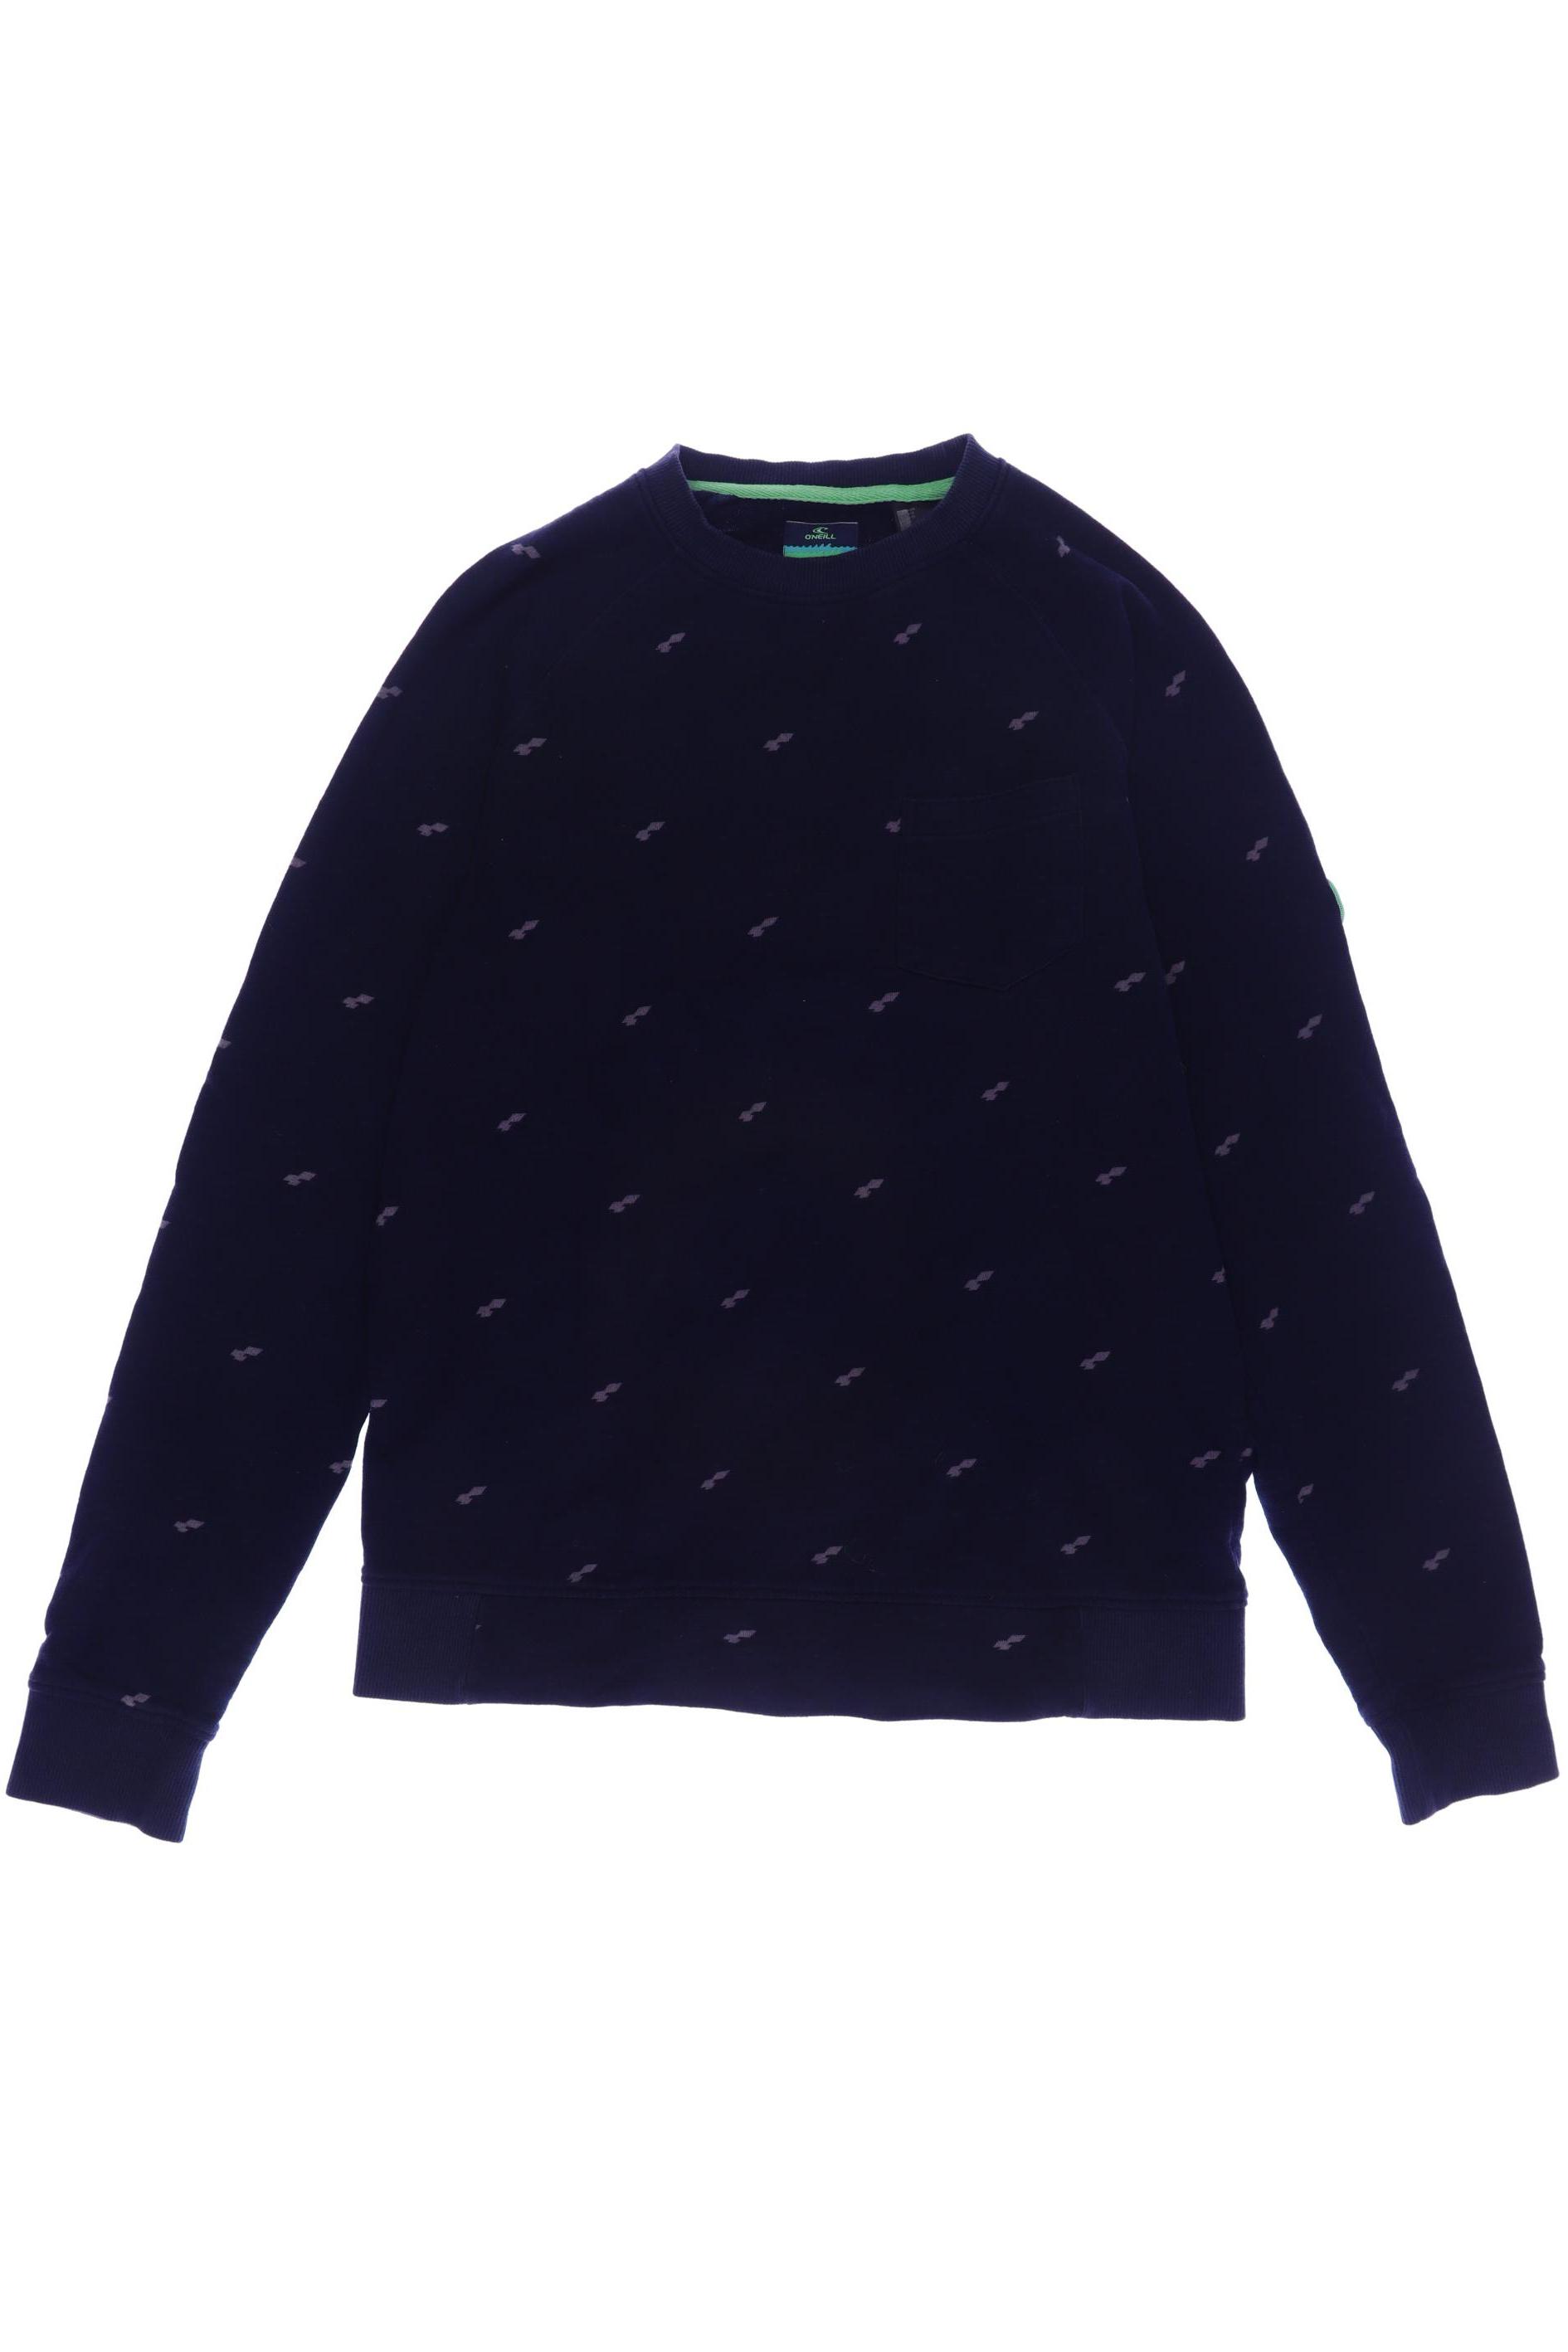 O Neill Herren Hoodies & Sweater, marineblau, Gr. 176 von O Neill